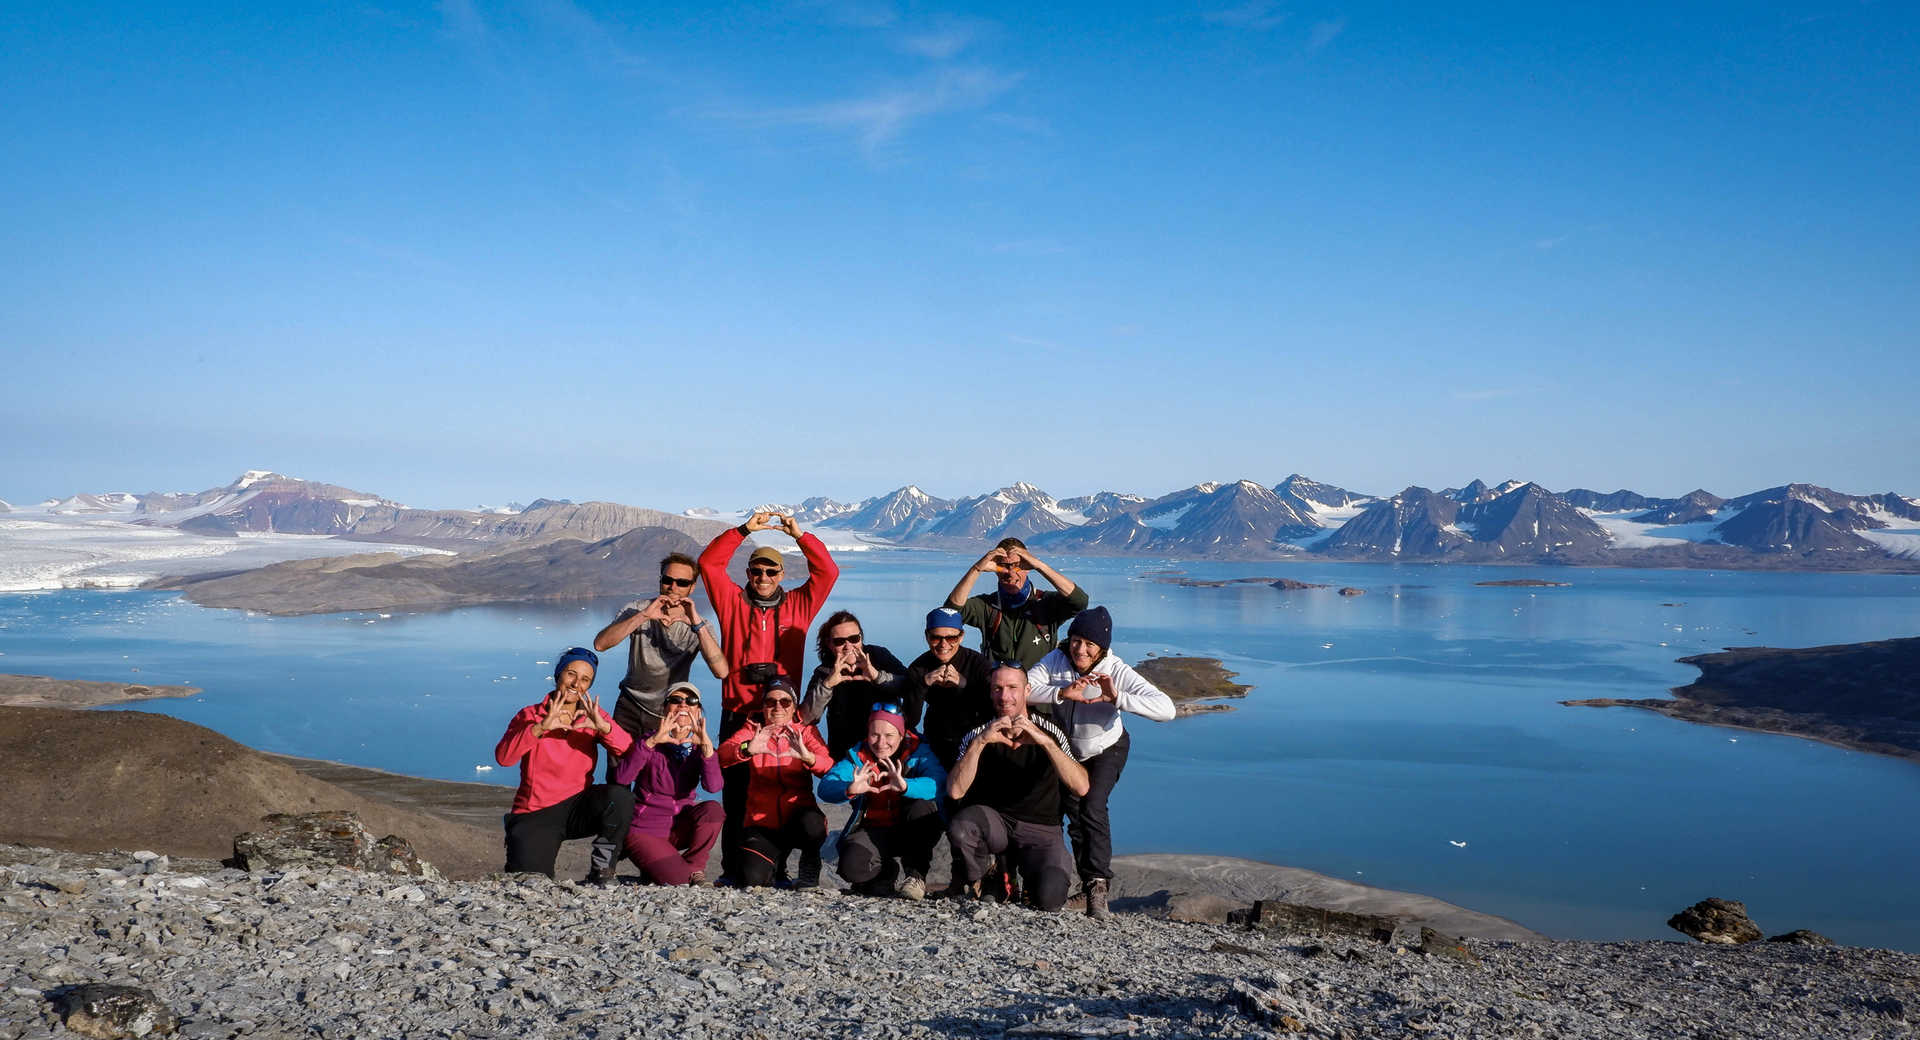 Voyage en groupe en Arctique, Spitzberg, Svalbard